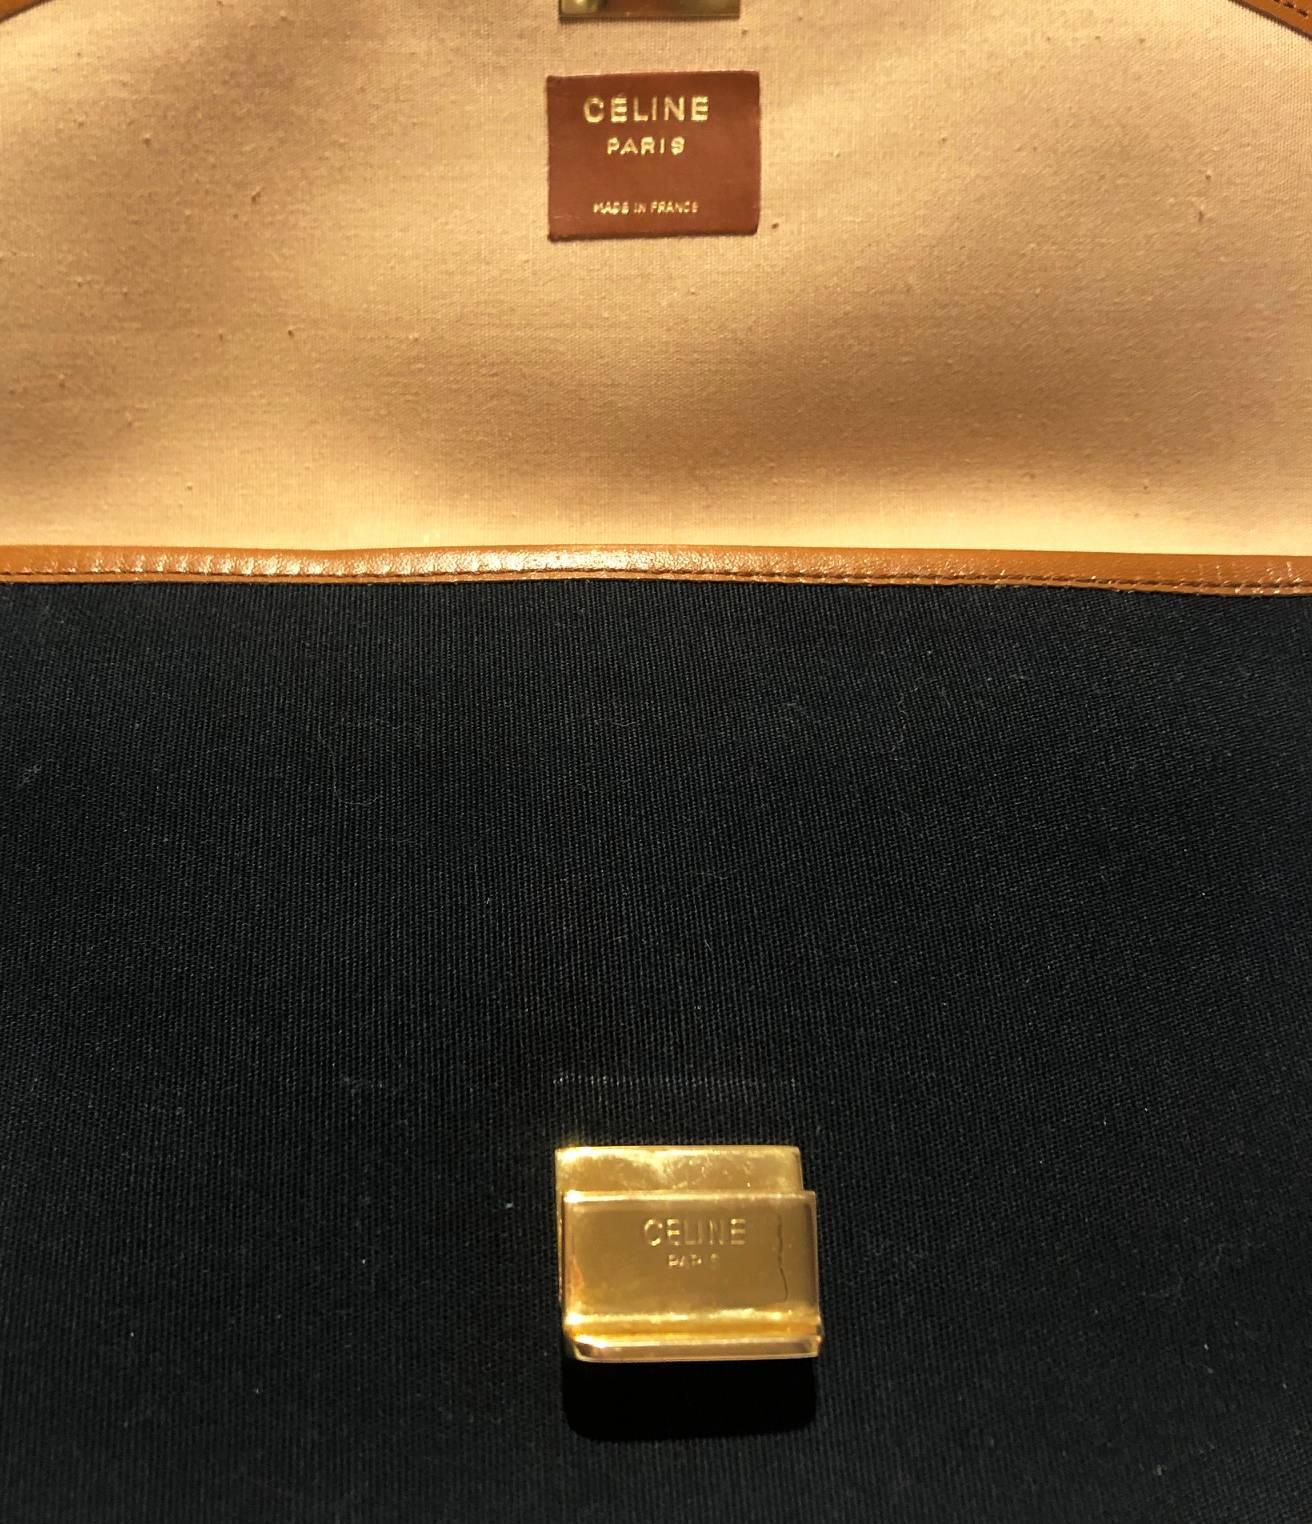 1970s Celine Paris cloth leather logo envelope clutch bag 1